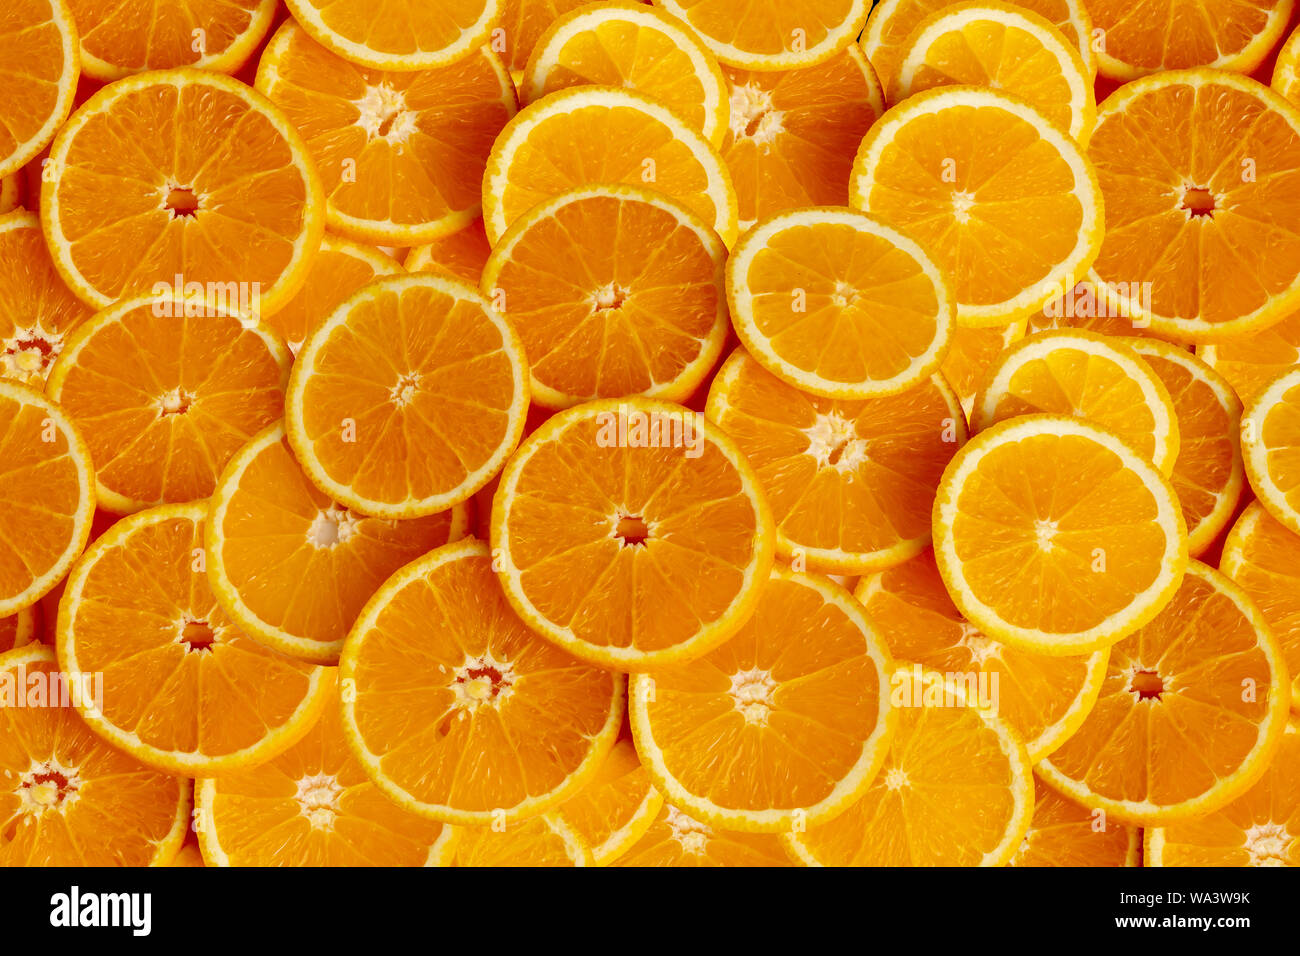 Frutas de naranja de fotograma completo y la textura de fondo. El resultado es agridulce o dulce. Contiene calcio, potasio, vitamina A y C. Foto de stock